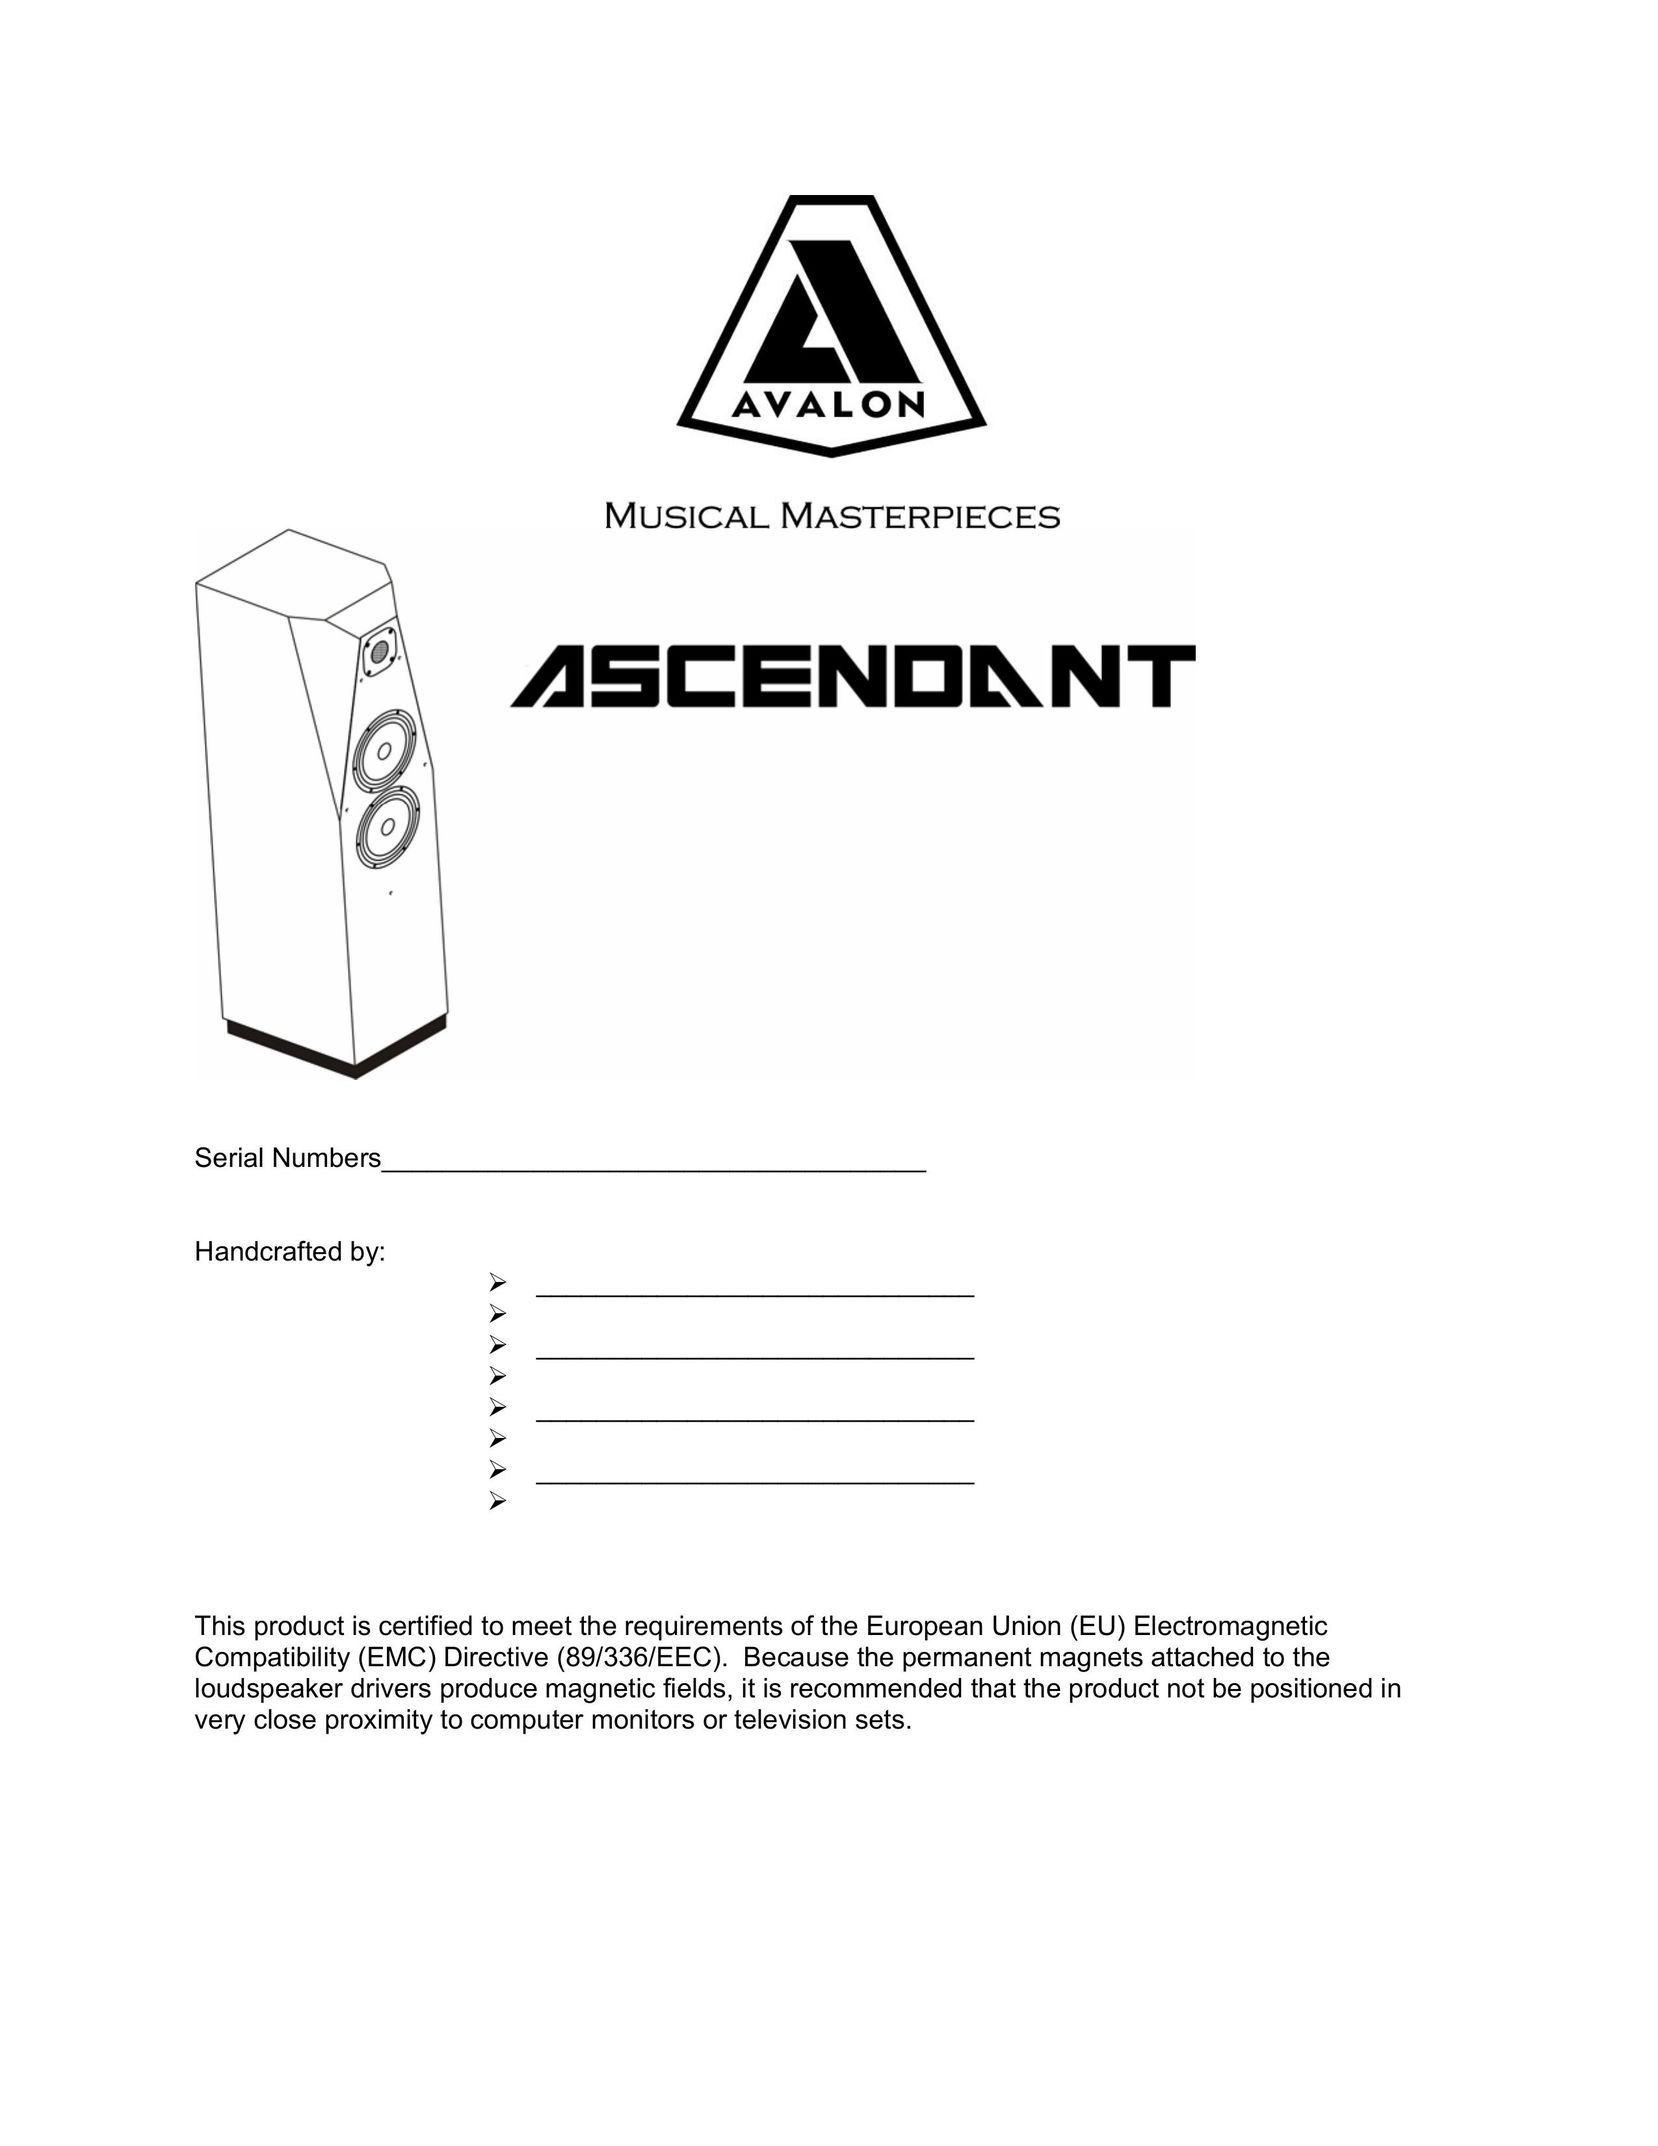 Avalon Acoustics AVALON ASCENDANT Speaker System User Manual